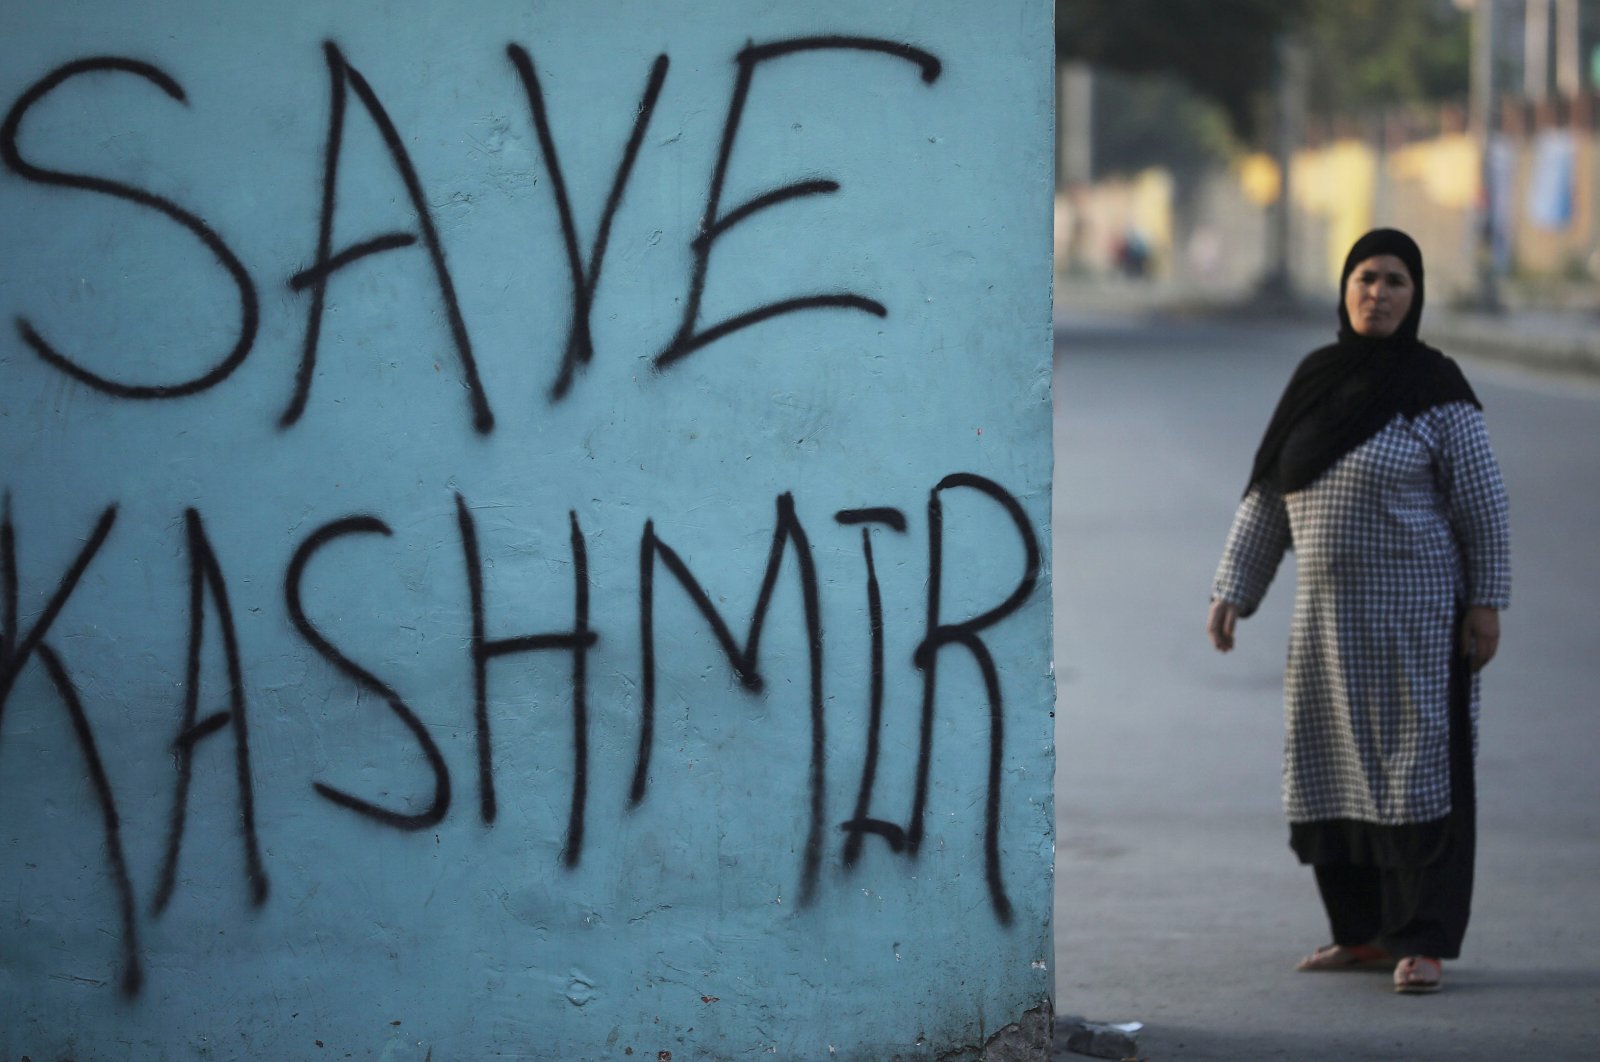 A Kashmiri woman stands next to graffiti written on a wall during restrictions, Srinagar, Jammu and Kashmir, Sept. 15, 2019. (Reuters Photo)